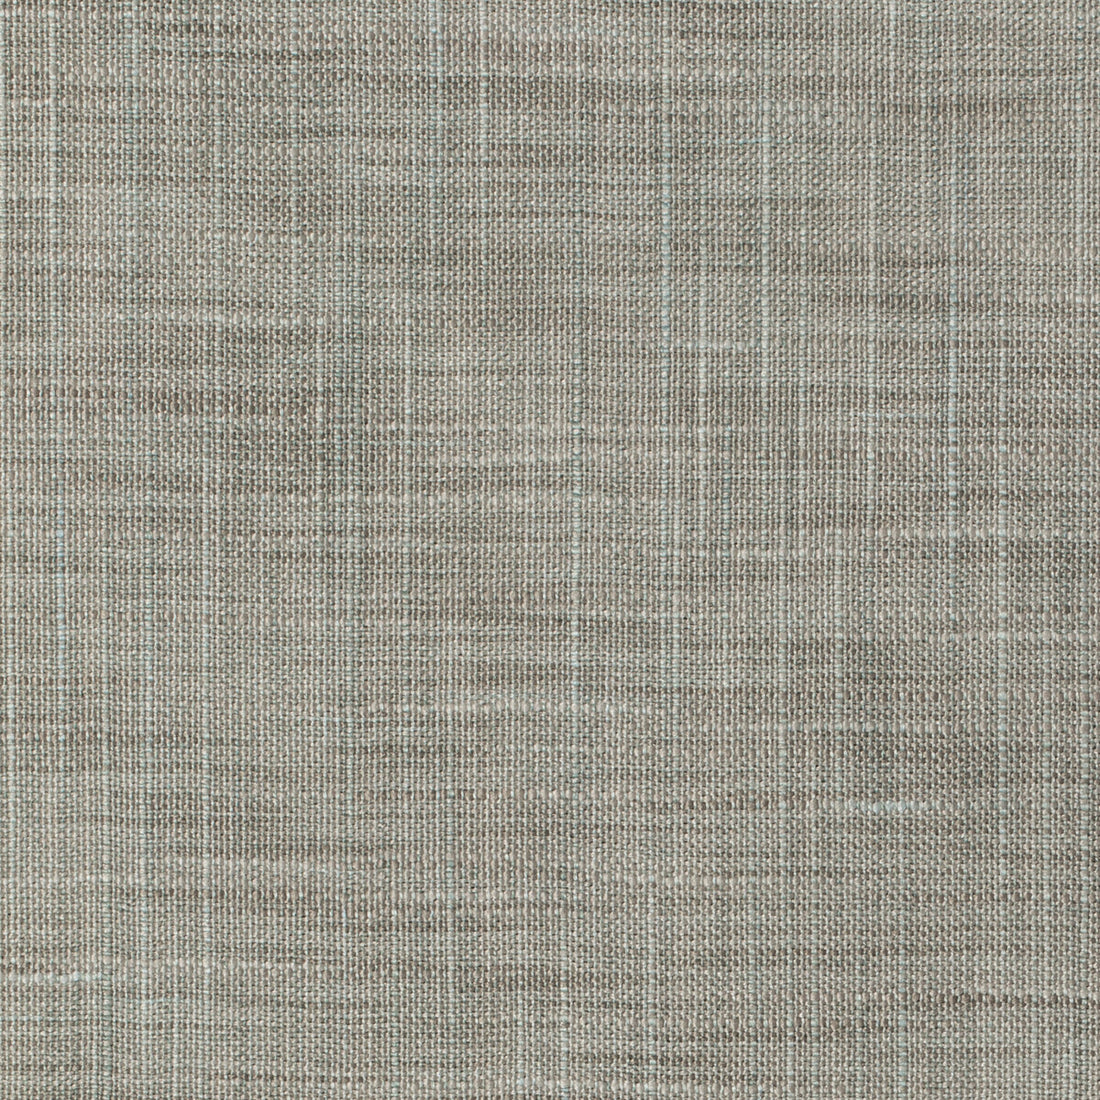 Kravet Basics fabric in 8813-121 color - pattern 8813.121.0 - by Kravet Basics